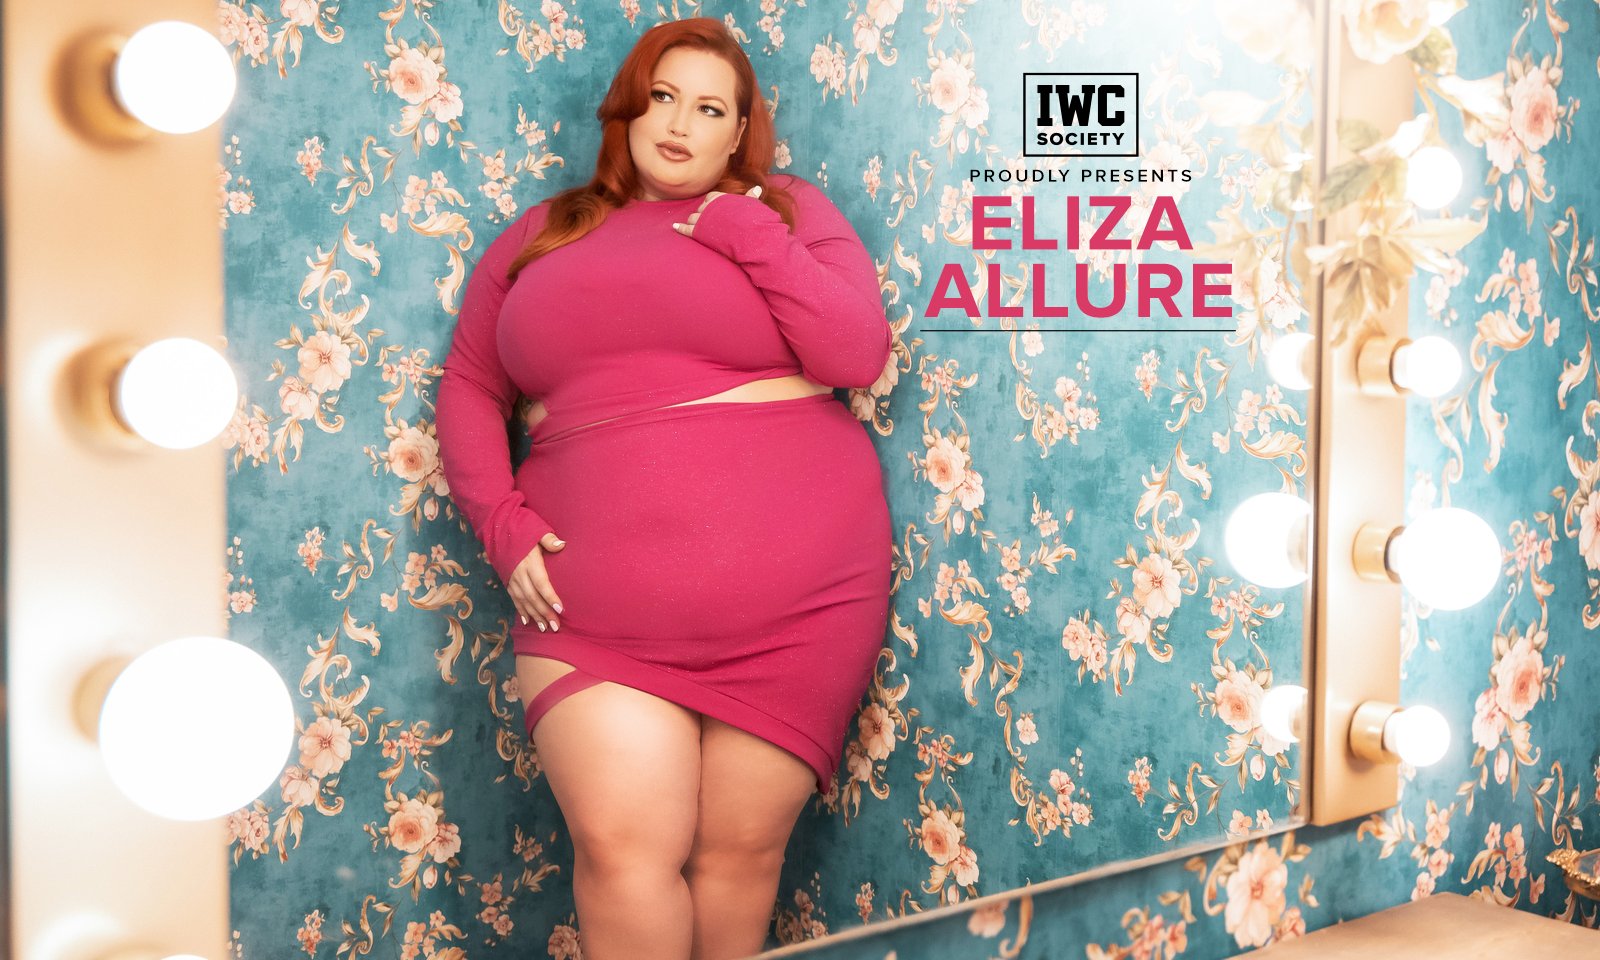 Eliza allure